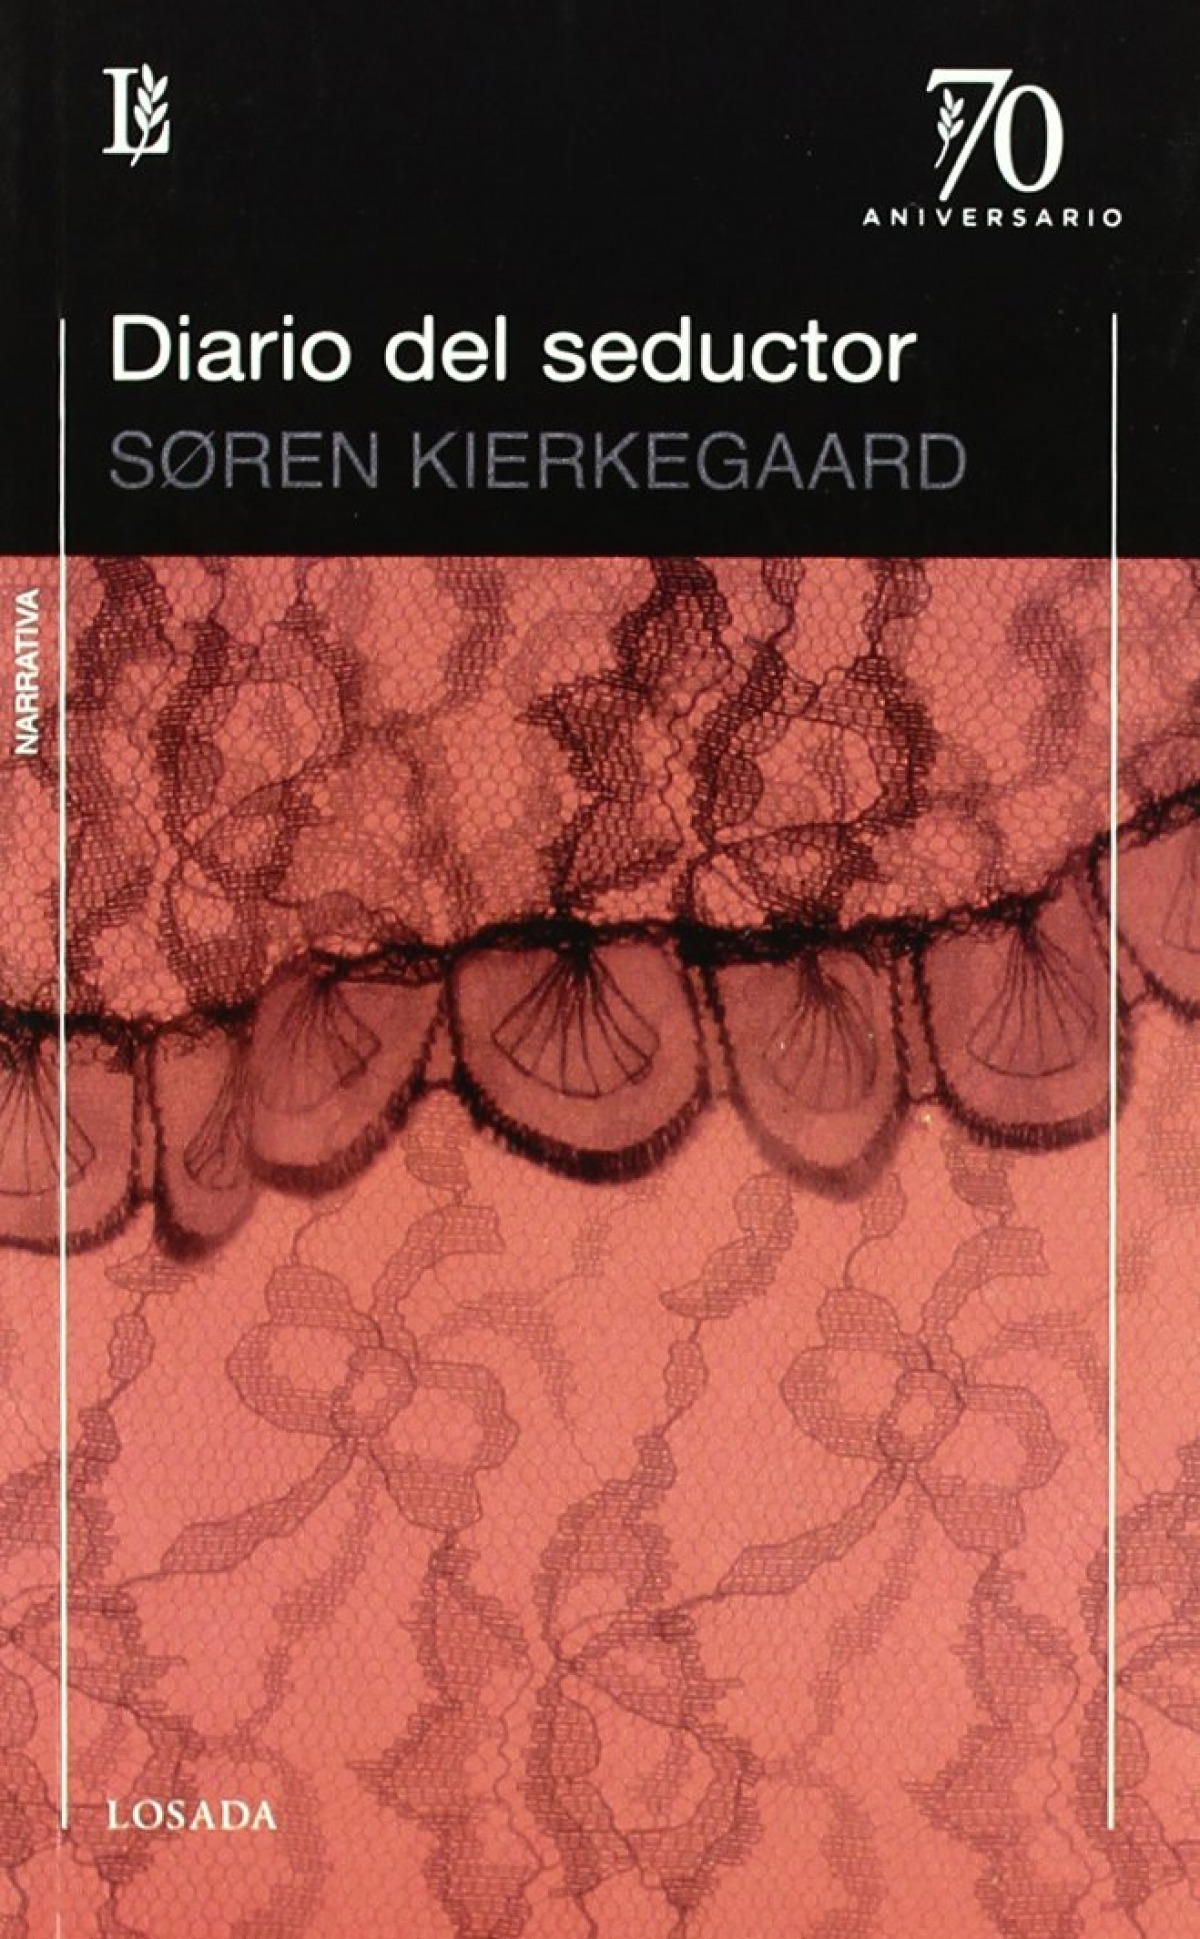 Diario de un seductor - Kierkegaard, Soren Aabye